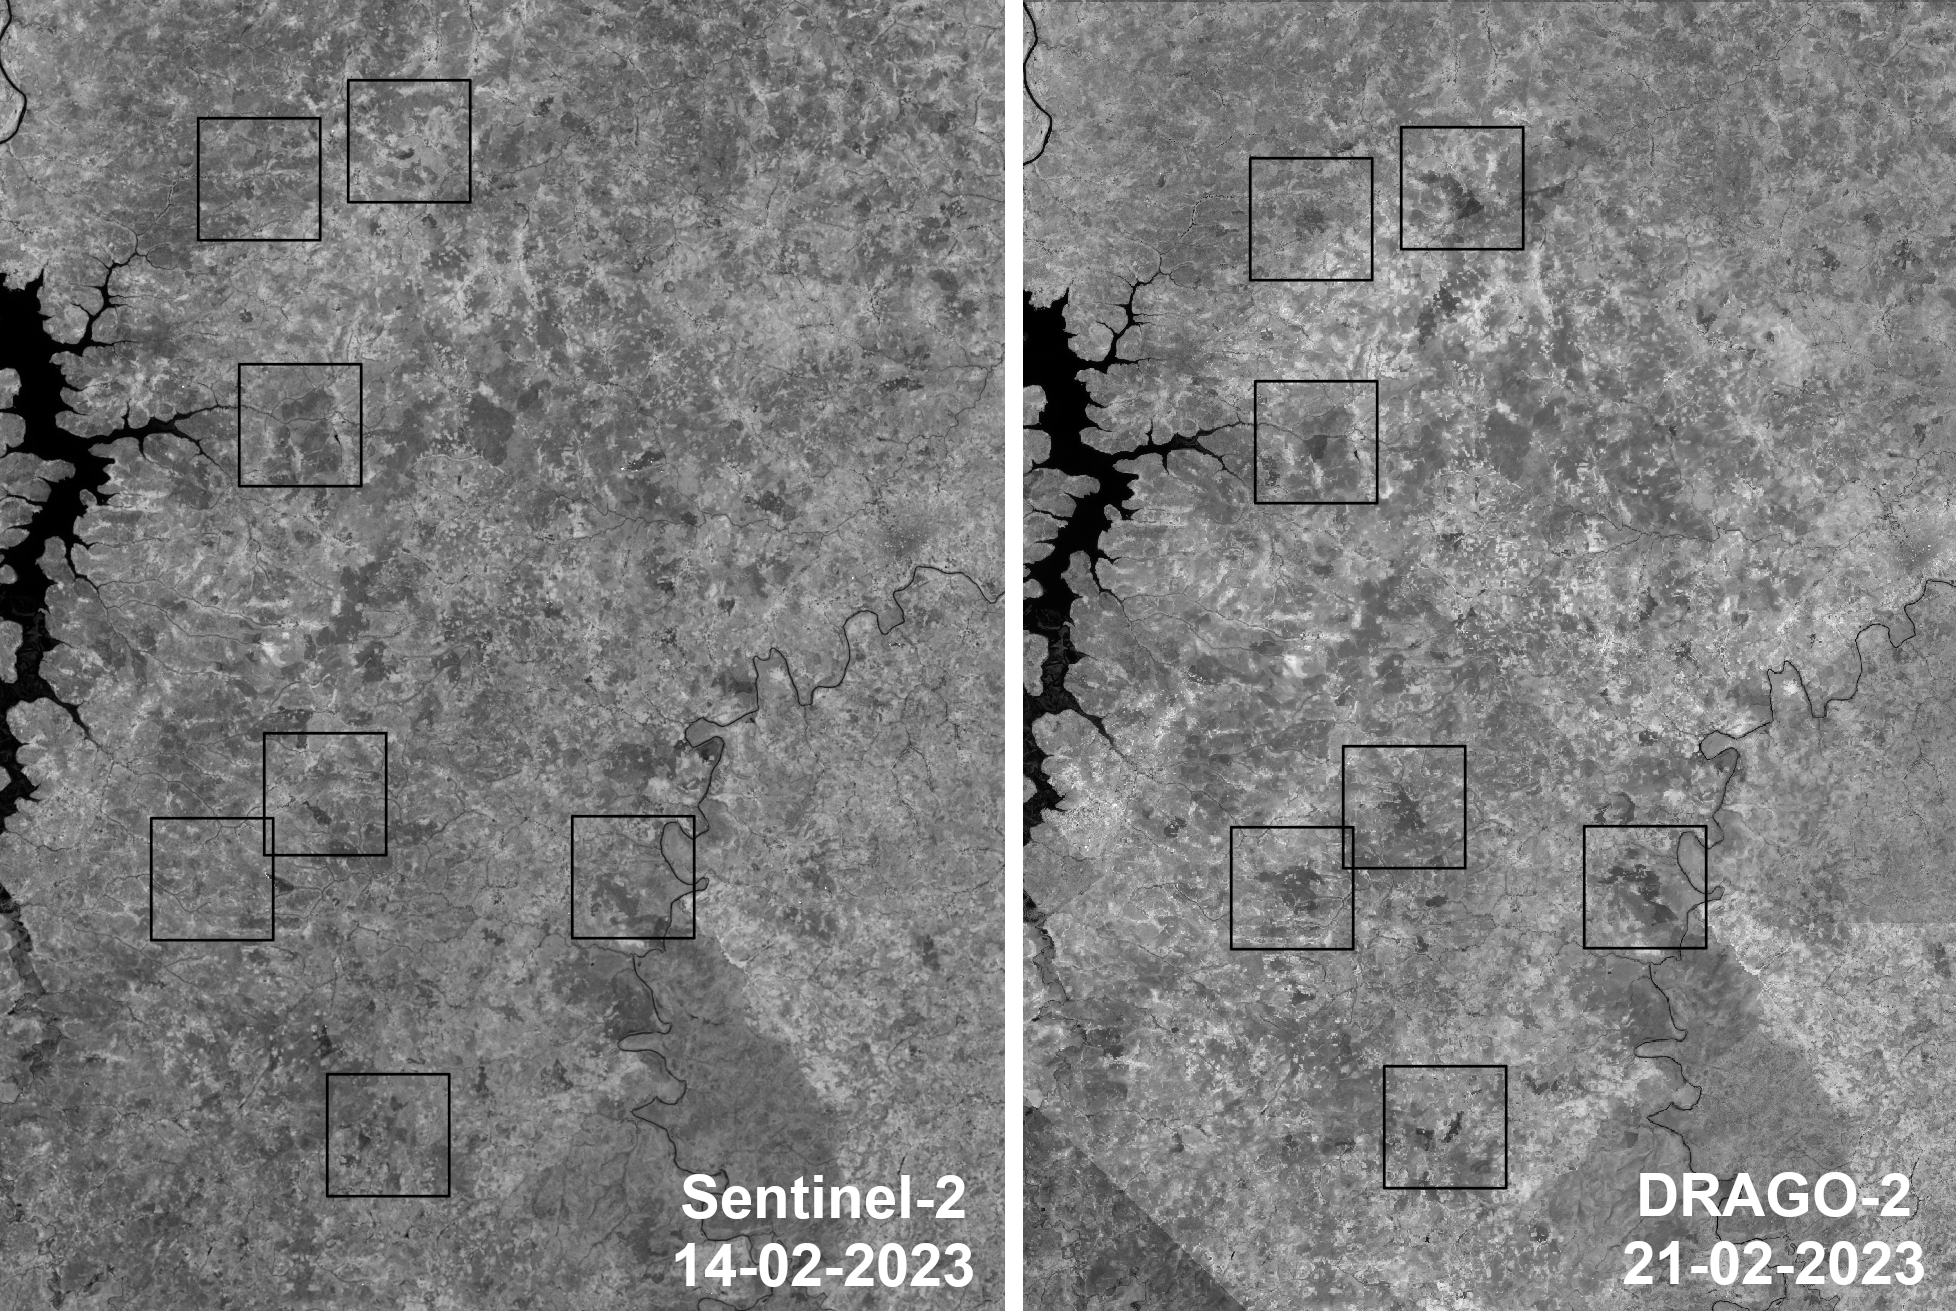 Comparación entre las imágenes de Sentinel-2 y DRAGO-2 que muestra la evolución de incendios y la generación de nuevos focos en Mali entre el 14 y el 21 de febrero de 2023. Los cuadrados marcan las zonas incendiadas. Crédito: IACTEC.